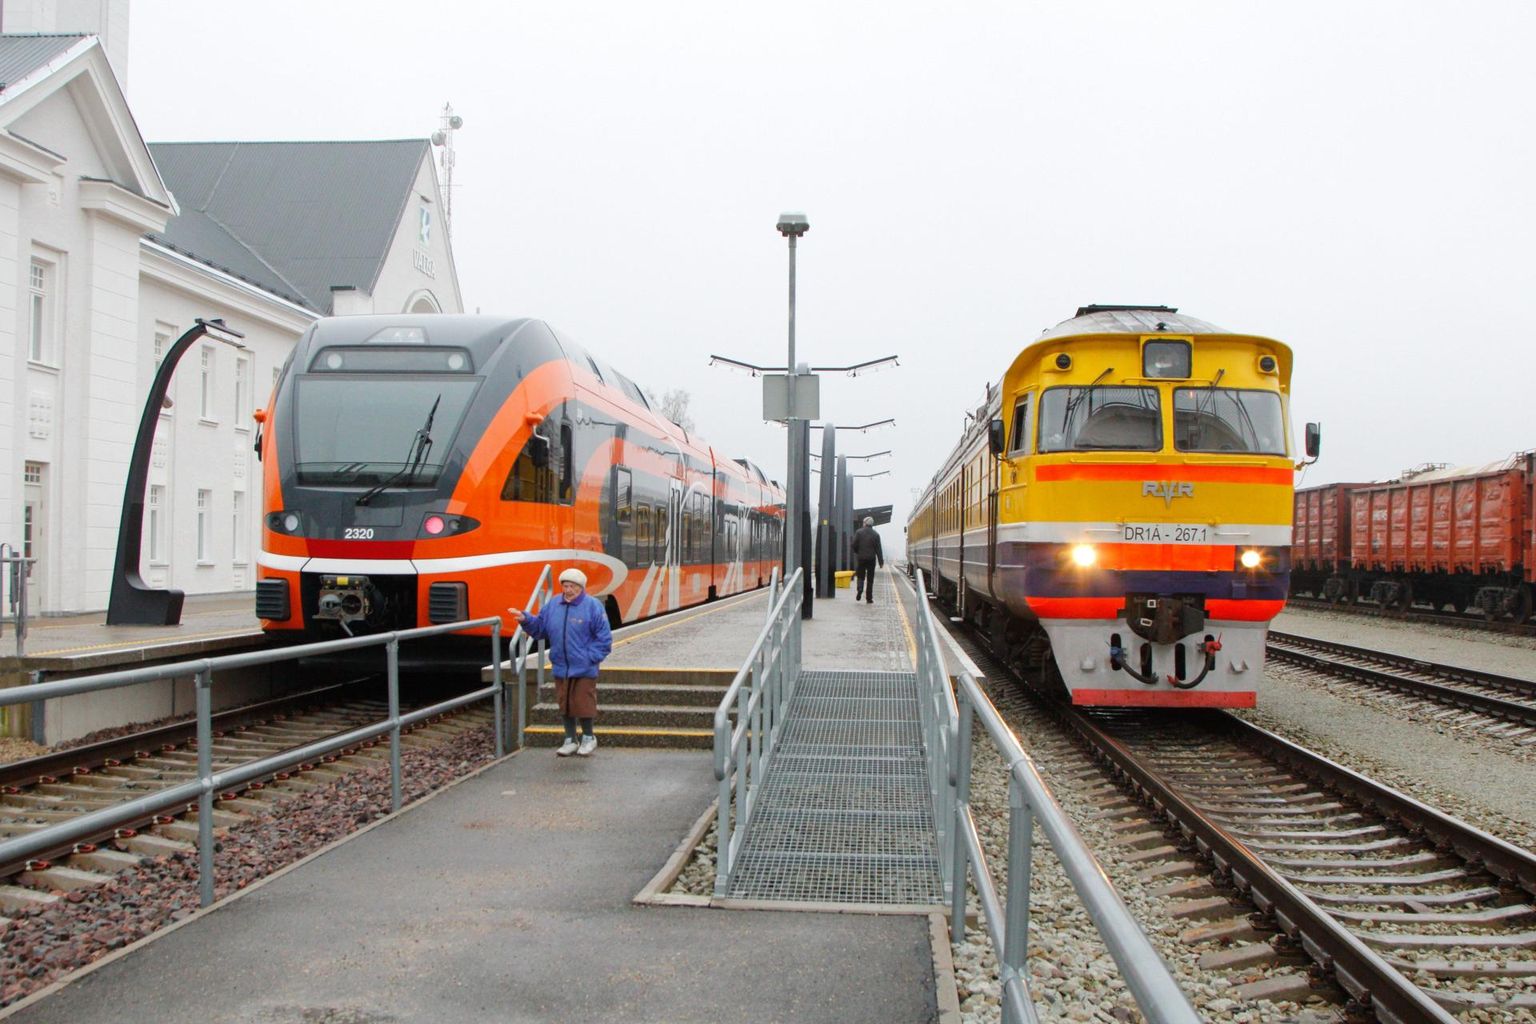 Praegu Riia ja Valga vahel sõitev rong (paremal) on aeglane ja ebamugav. Samuti ei ühti selle ajagraafik Valgast edasi sõitva Elroni graafikuga.